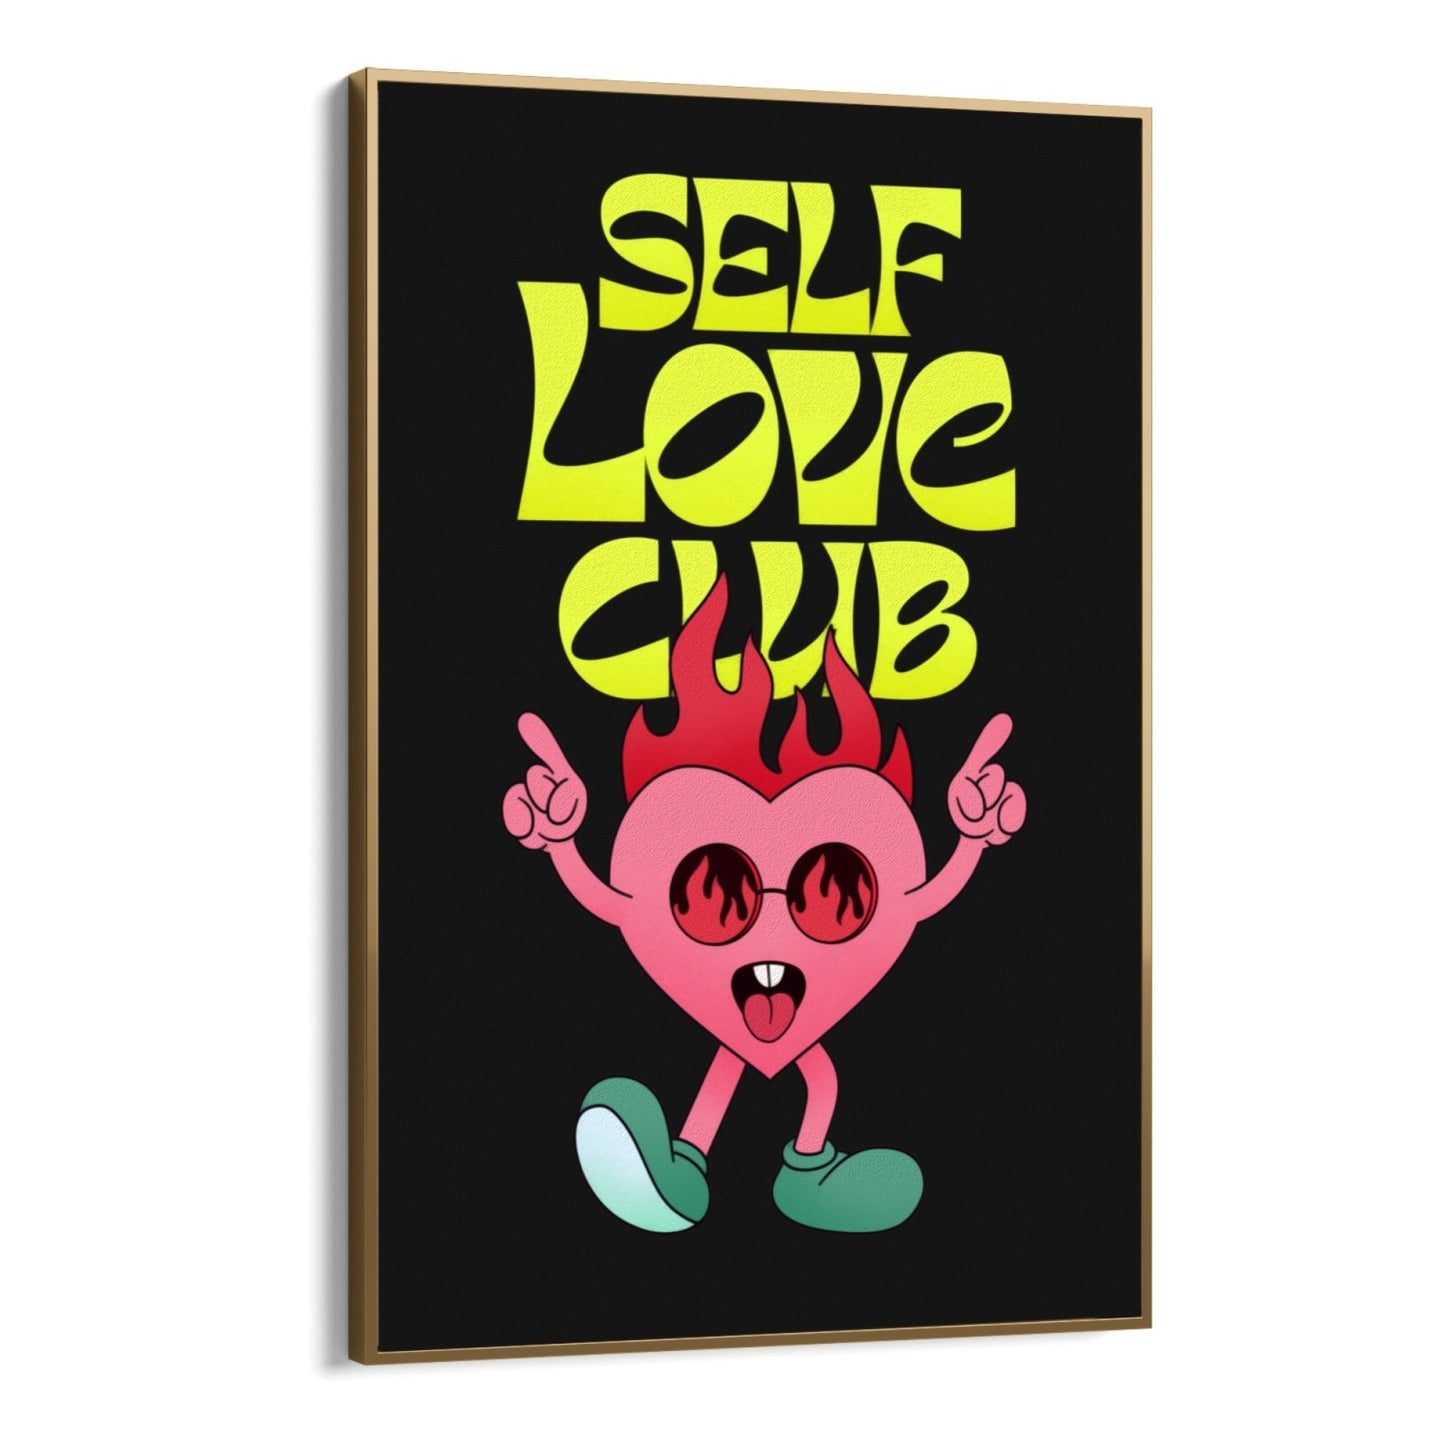 Club d'amour de soi